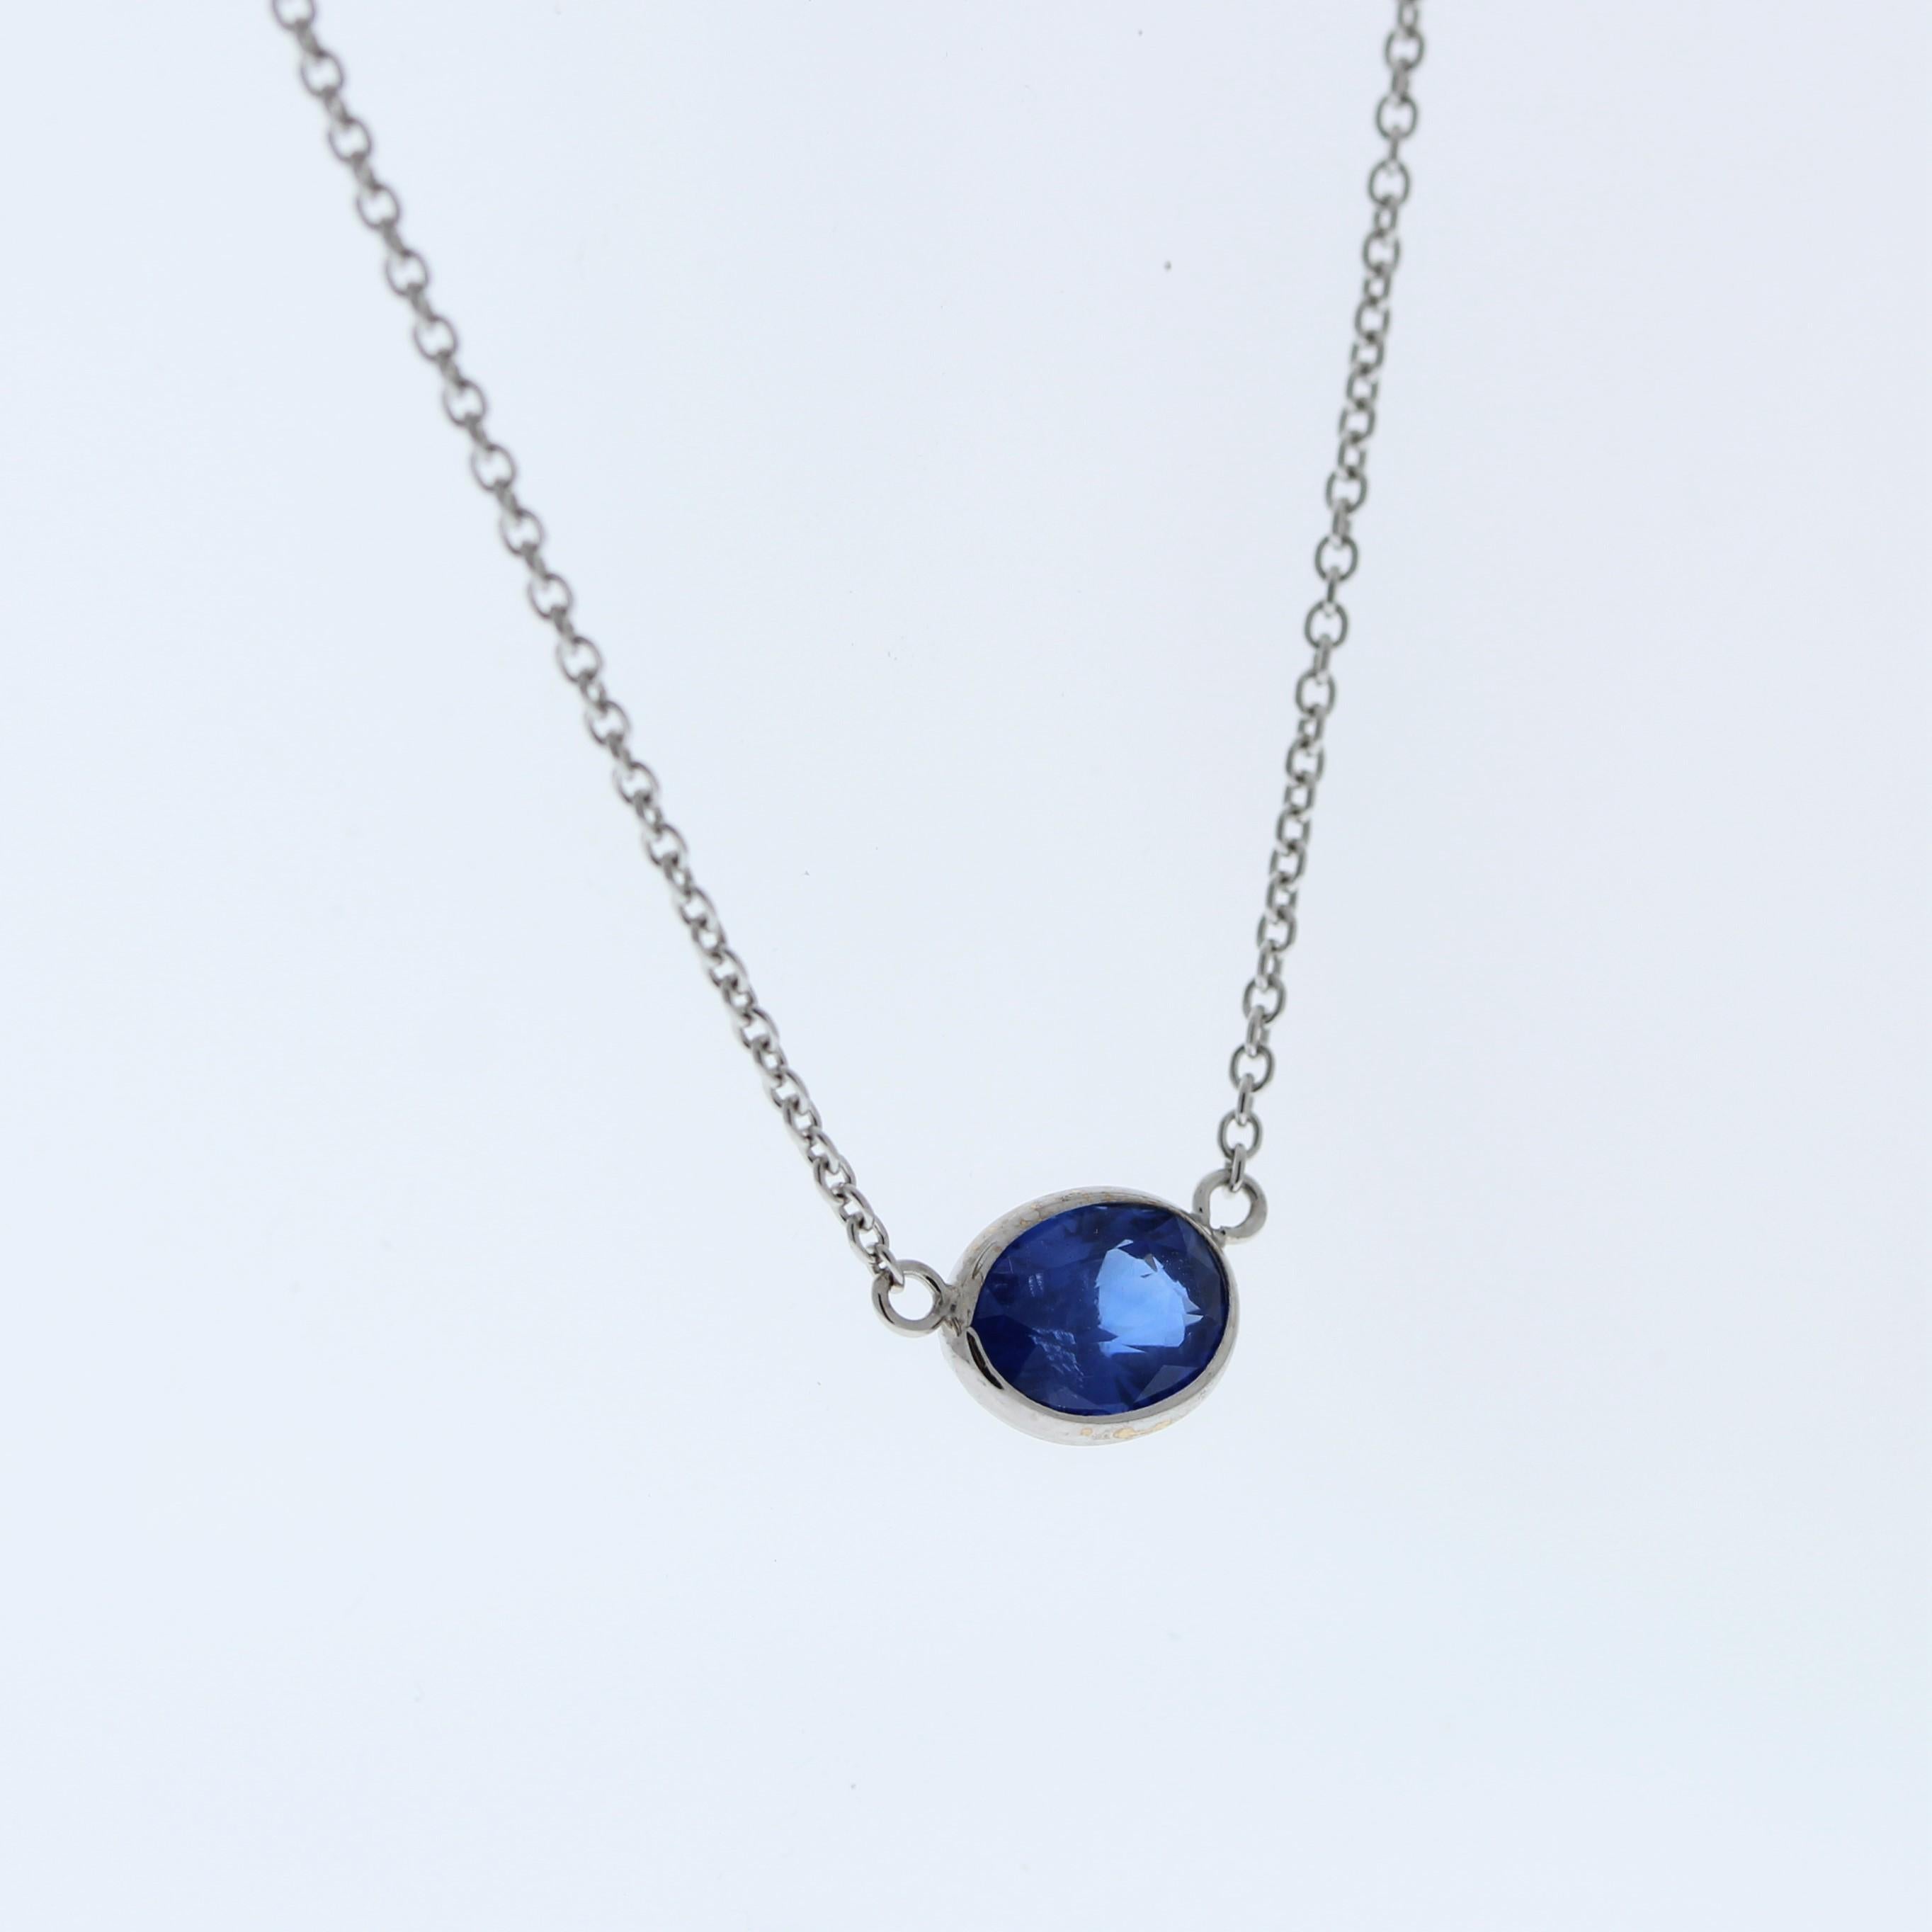 Die Halskette besteht aus einem blauen Saphir im Ovalschliff von 1,53 Karat, der in einen Anhänger oder eine Fassung aus 14 Karat Weißgold gefasst ist. Der ovale Schliff und die Farbe des blauen Saphirs in der Weißgoldfassung machen ihn zu einem